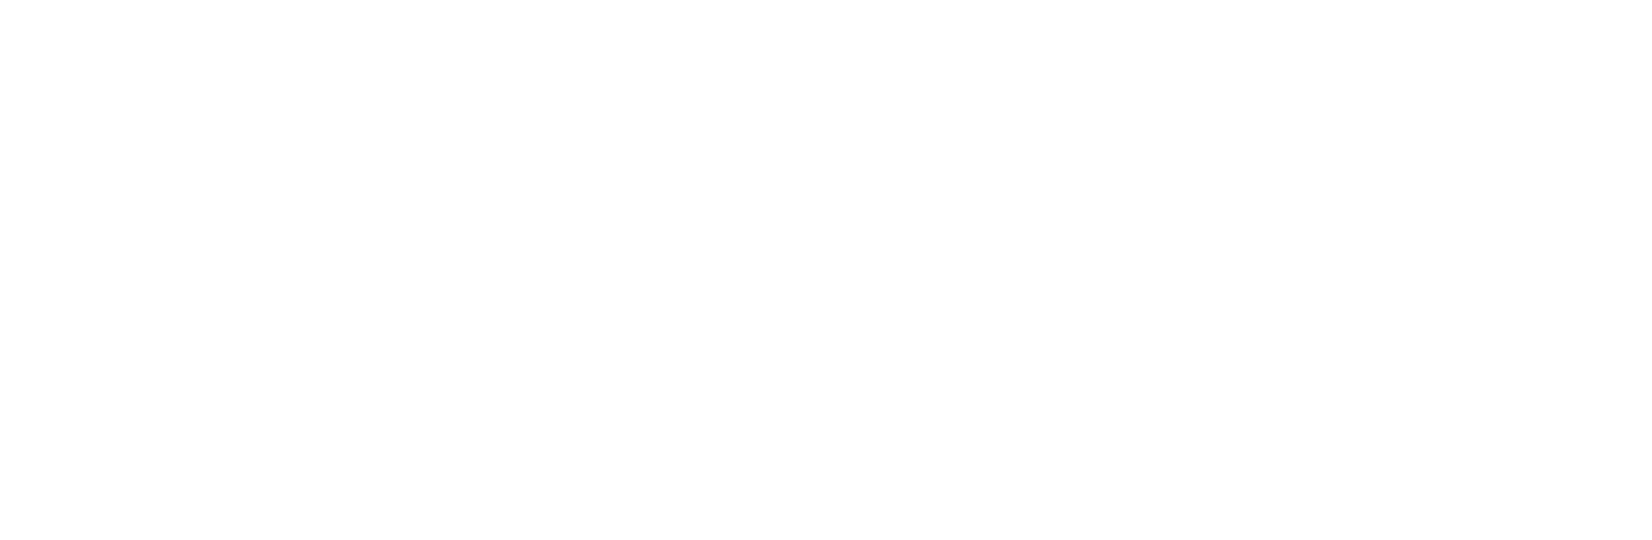 Visit Jyväskylä Region logo